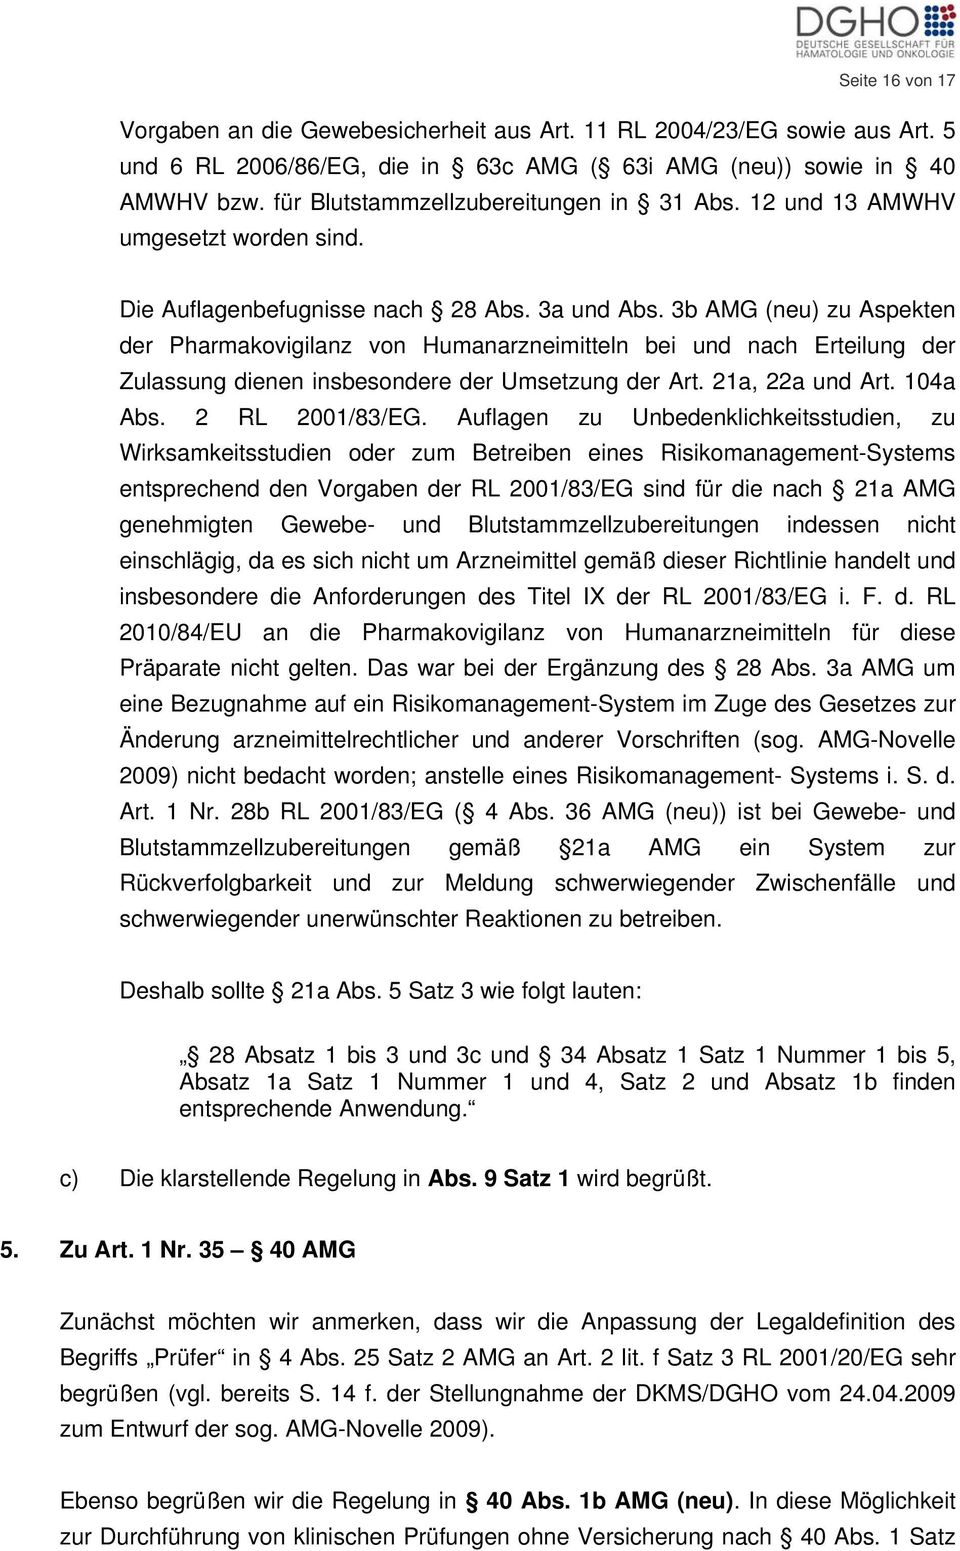 3b AMG (neu) zu Aspekten der Pharmakovigilanz von Humanarzneimitteln bei und nach Erteilung der Zulassung dienen insbesondere der Umsetzung der Art. 21a, 22a und Art. 104a Abs. 2 RL 2001/83/EG.